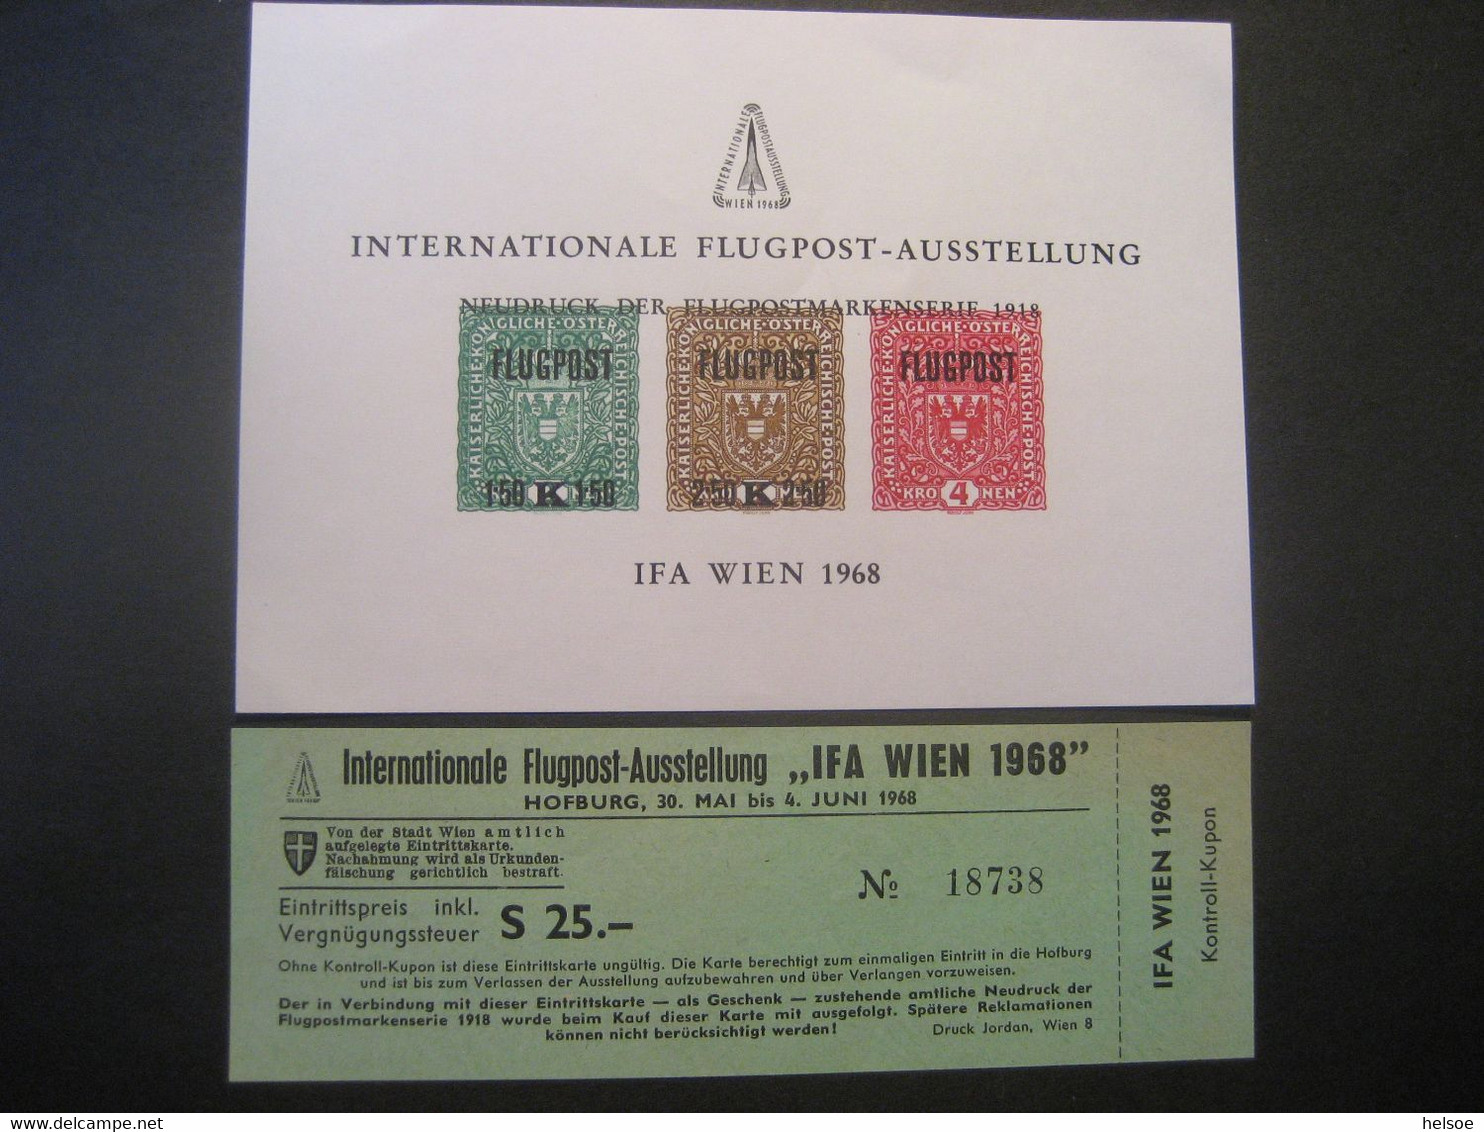 Österreich 1968- Internationale Flugpost-Ausstellung, IFA Wien Neudruckblock, Unbenutzte Eintrittskarte, ANK N7 - Proeven & Herdruk